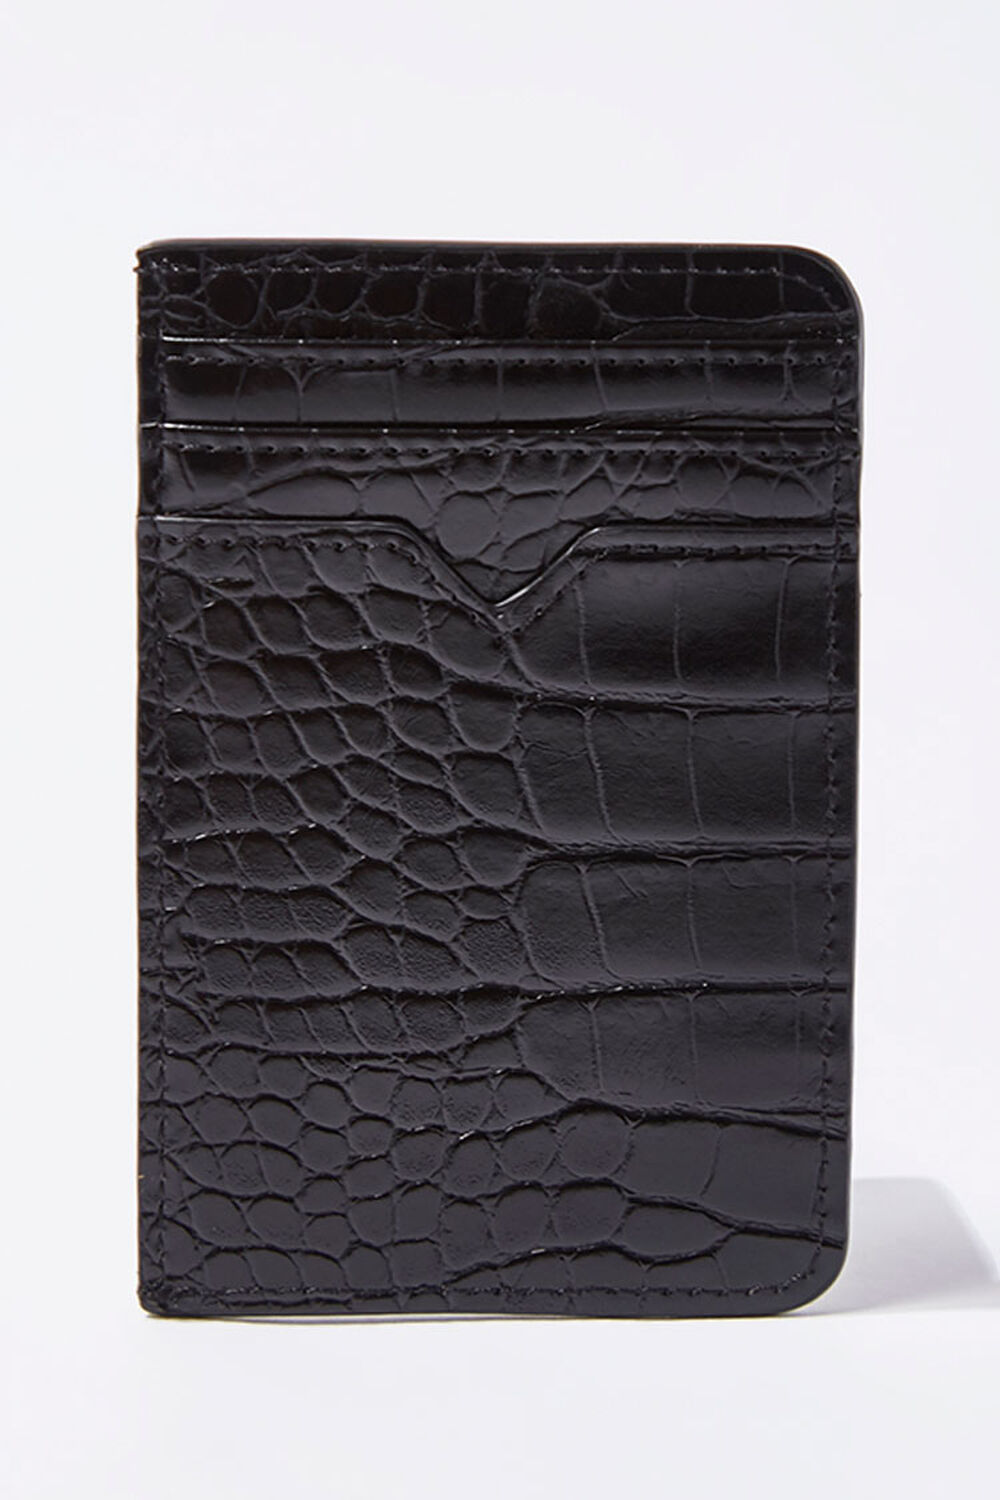 BLACK Faux Croc Leather Wallet, image 3